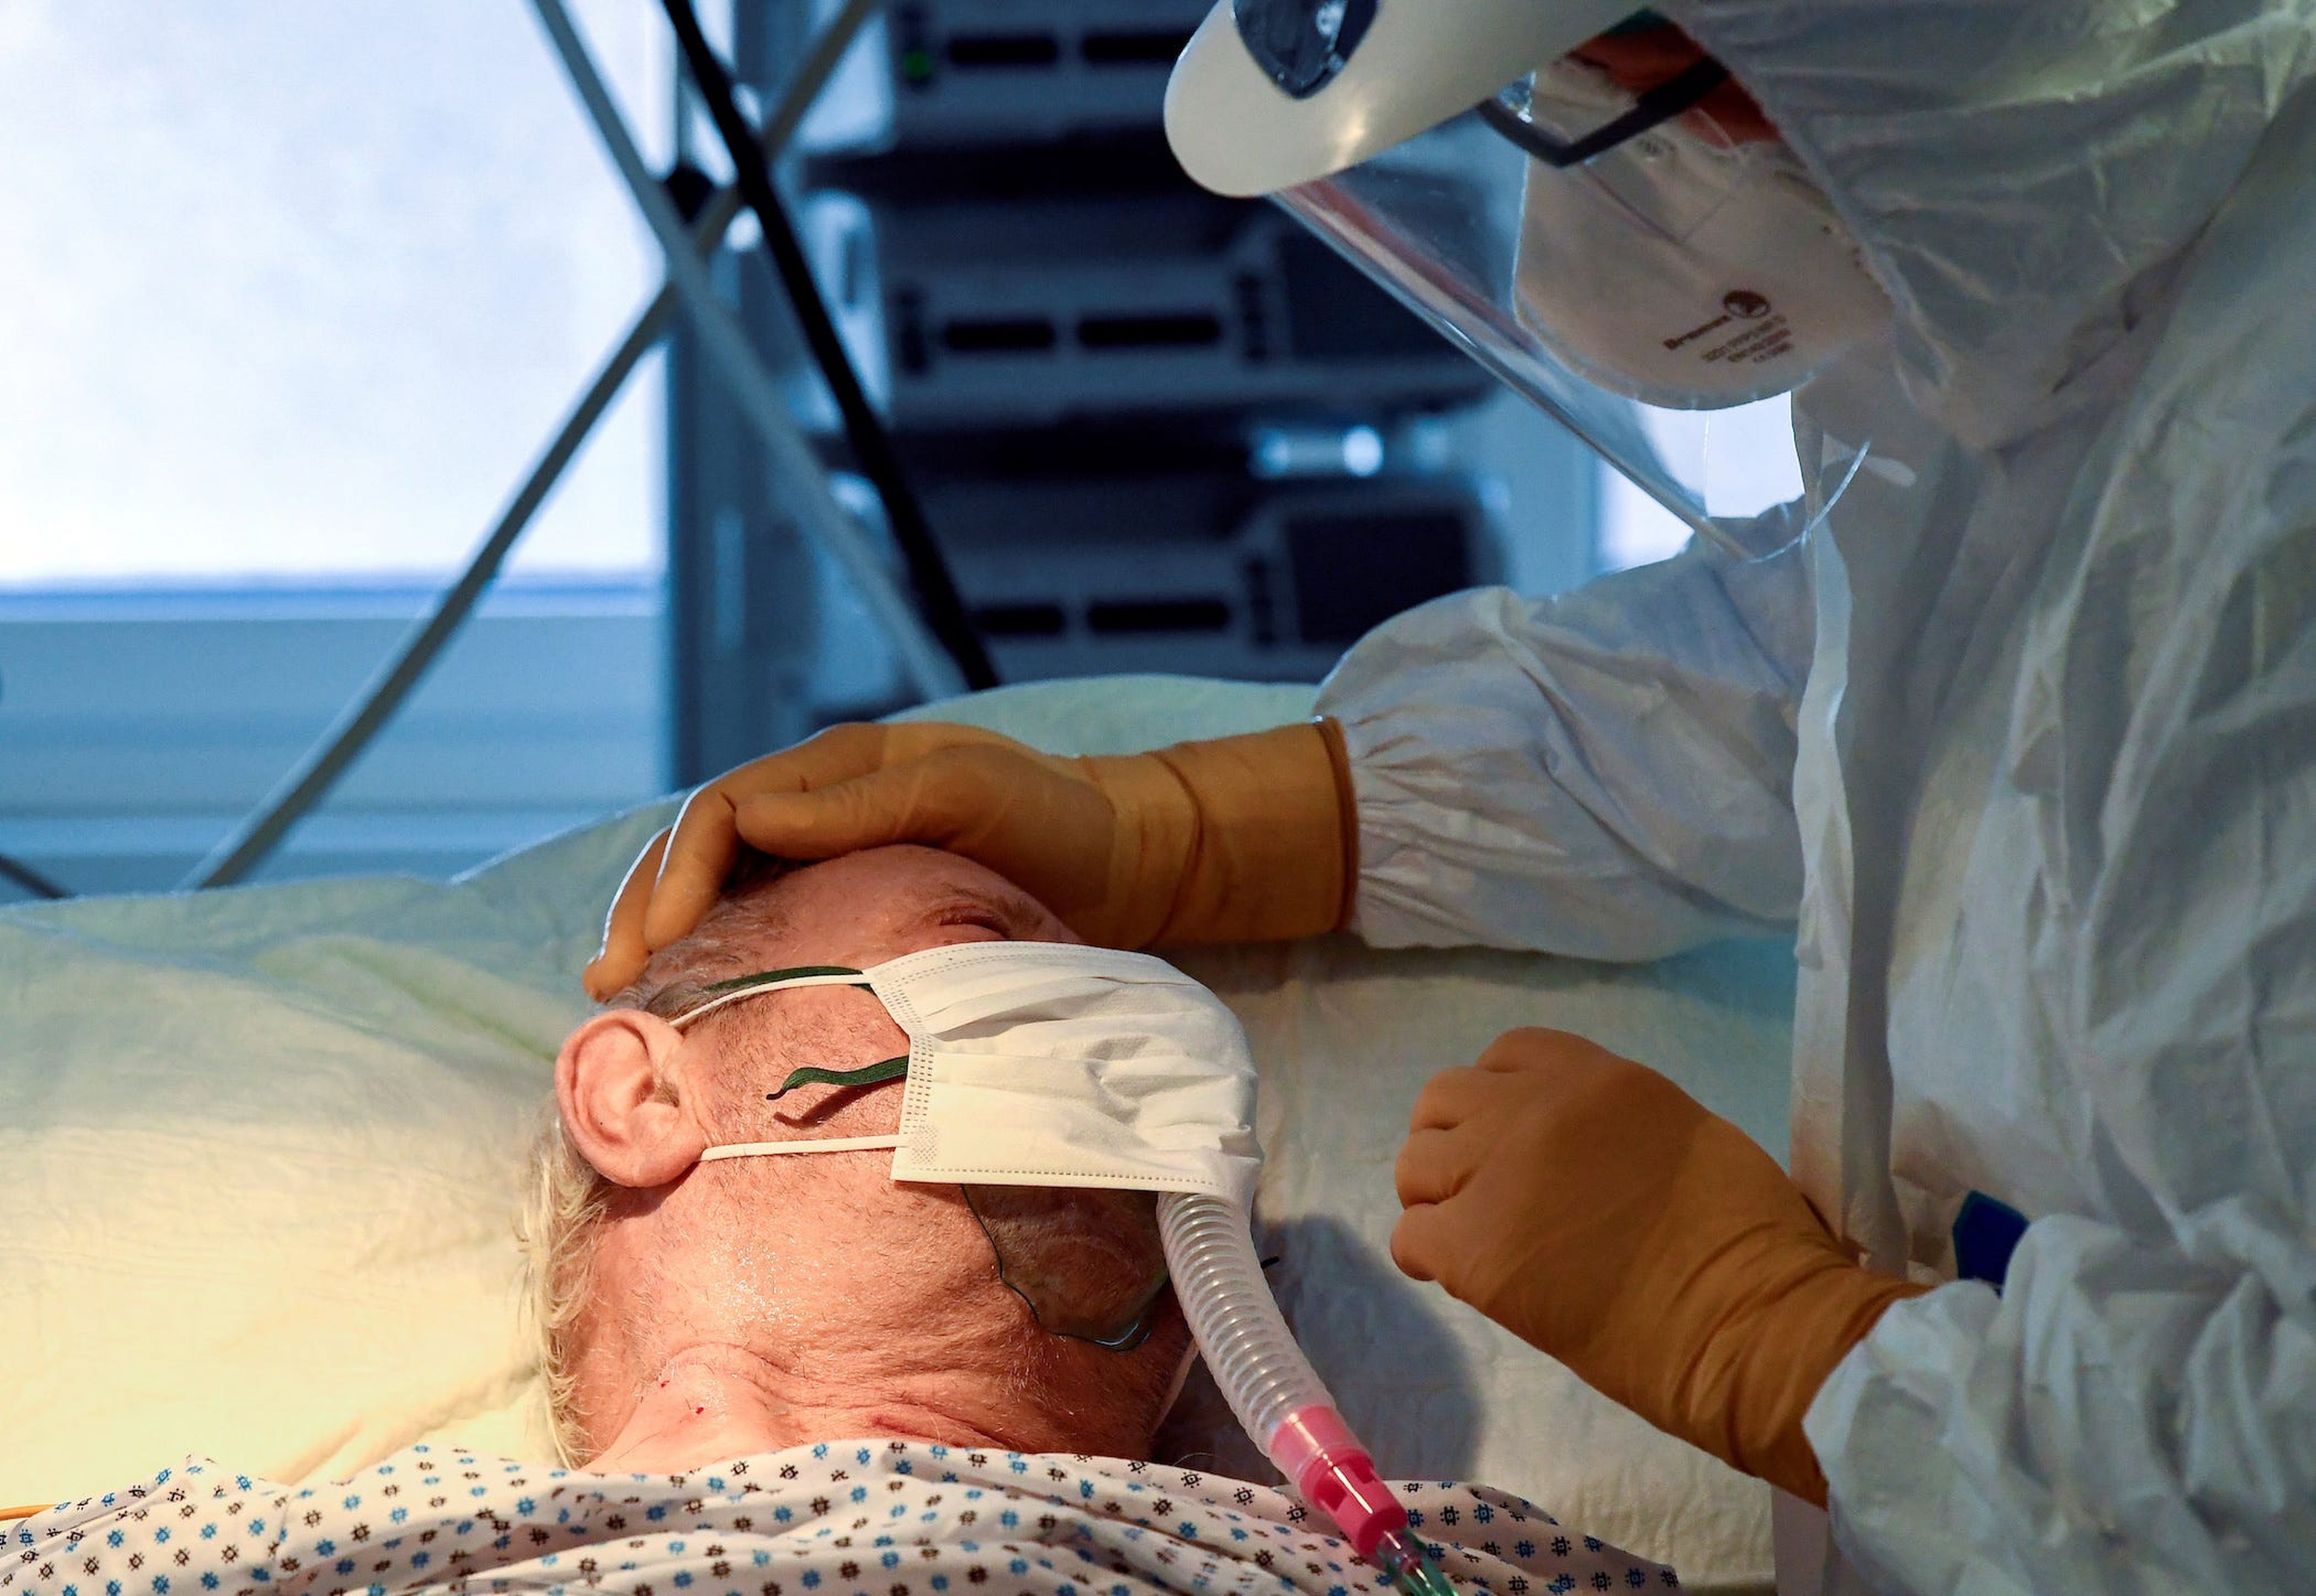 Un médico atiende a un paciente que sufre de COVID-19 en la unidad de cuidados intensivos del hospital Circolo de Varese, Italia, el 9 de abril de 2020.